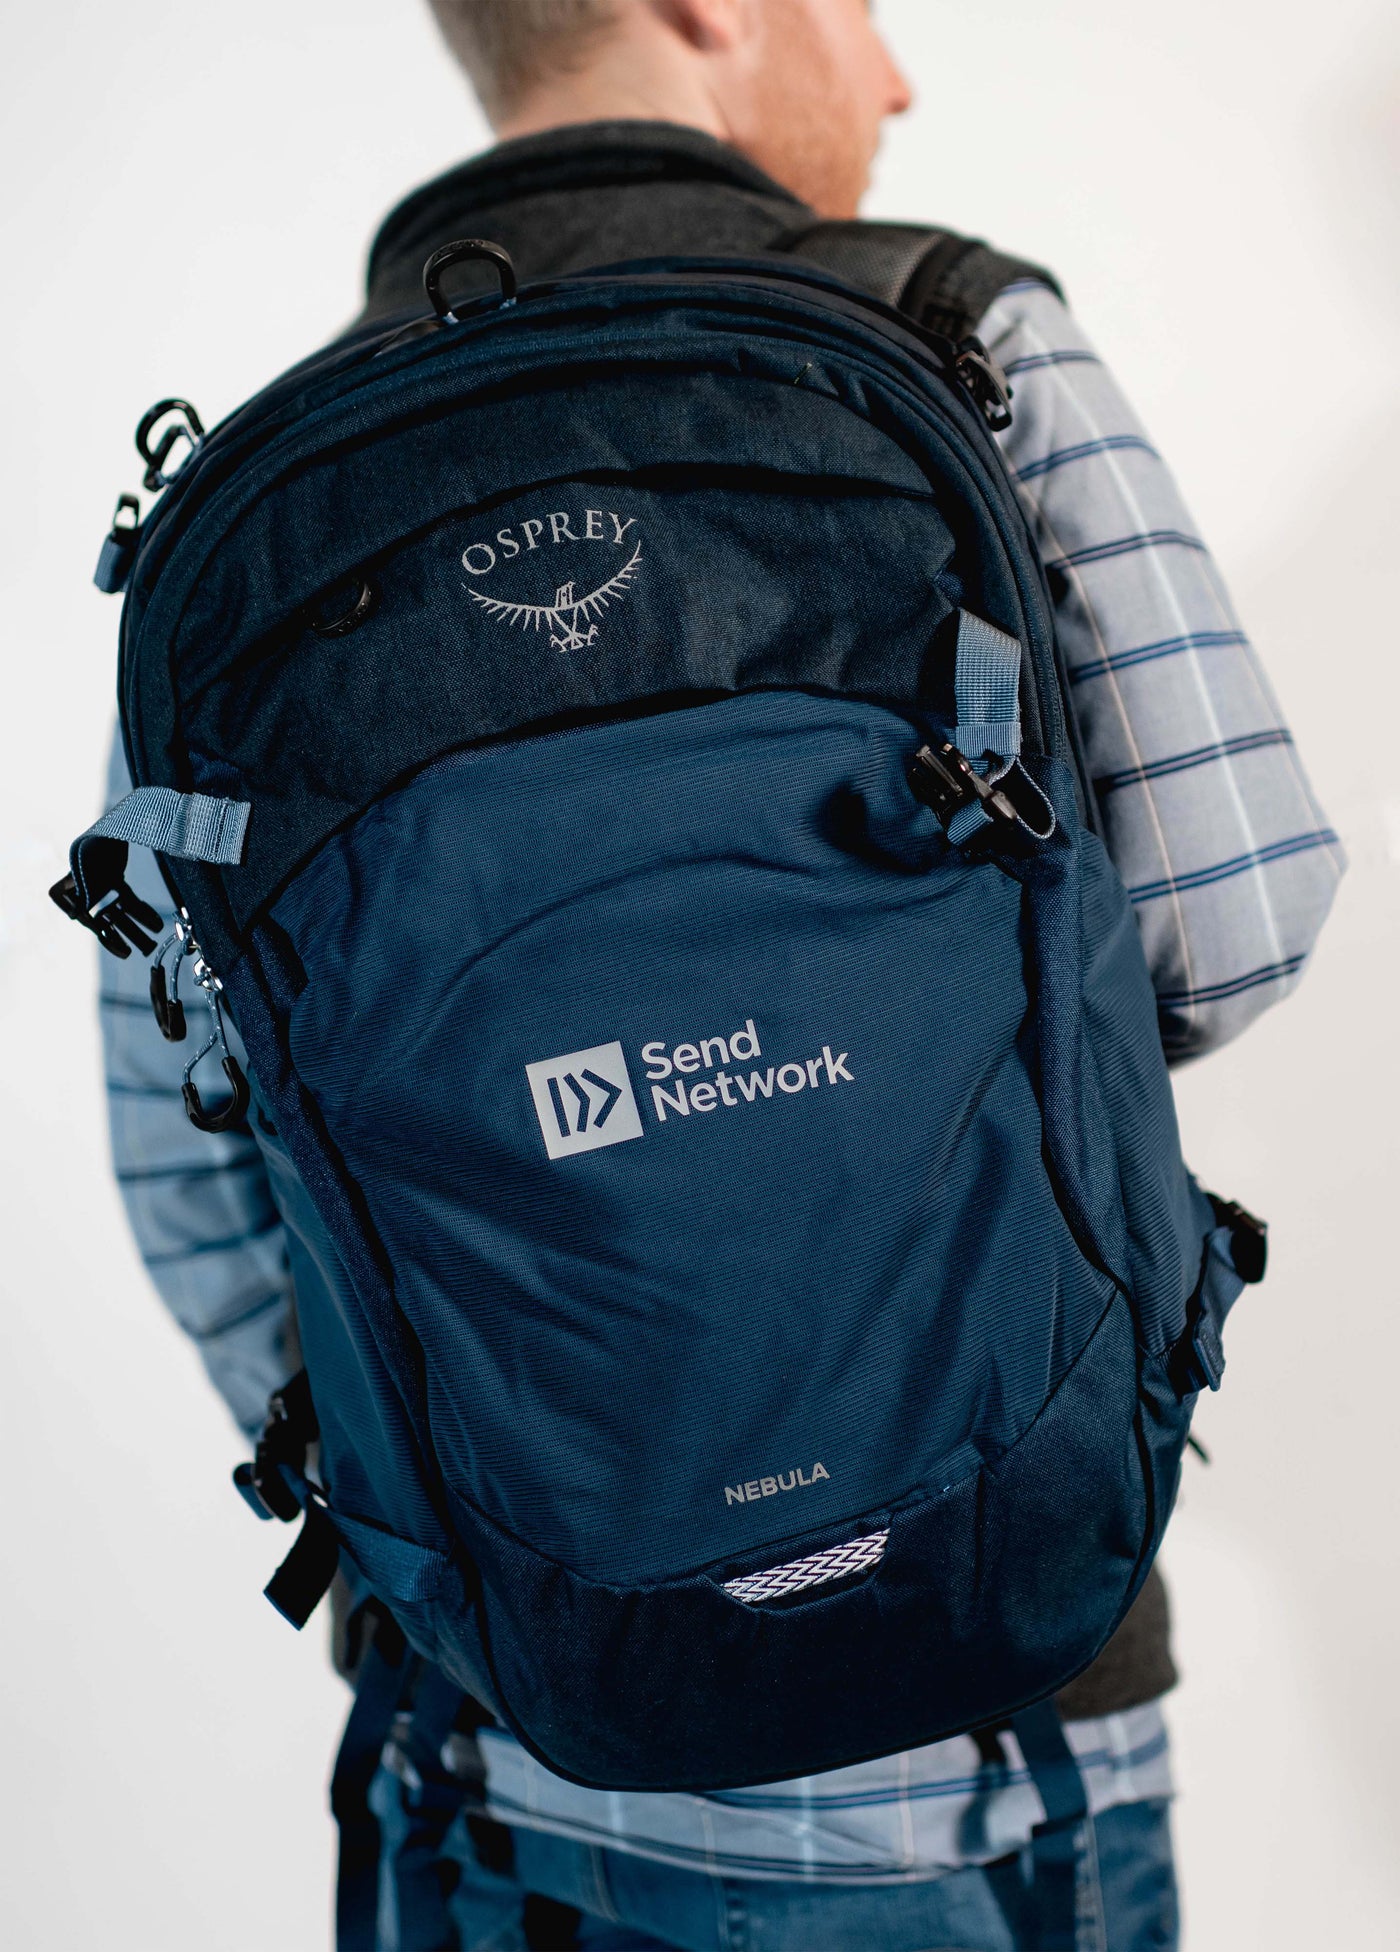 Send Network Osprey Nebula Backpack